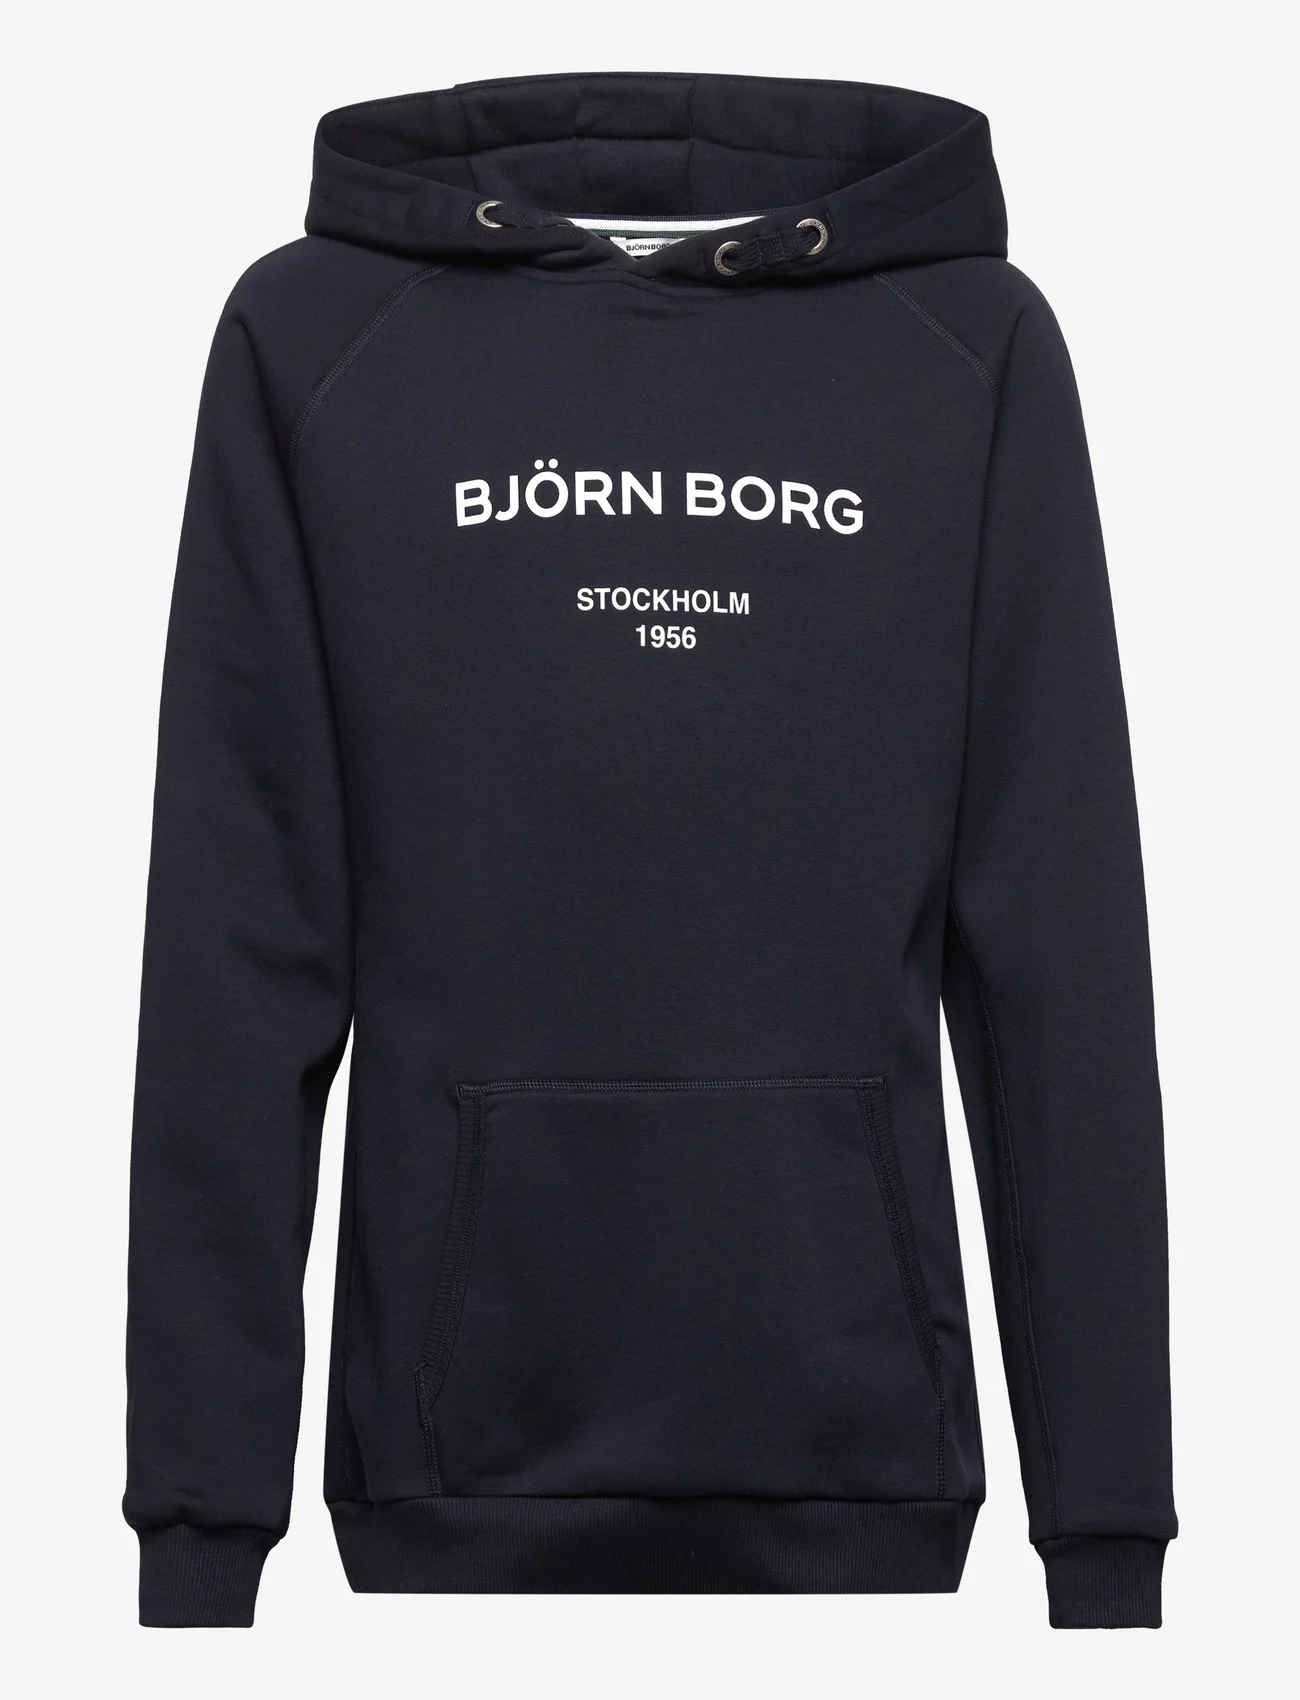 Björn Borg - BORG HOODIE - hoodies - night sky - 0